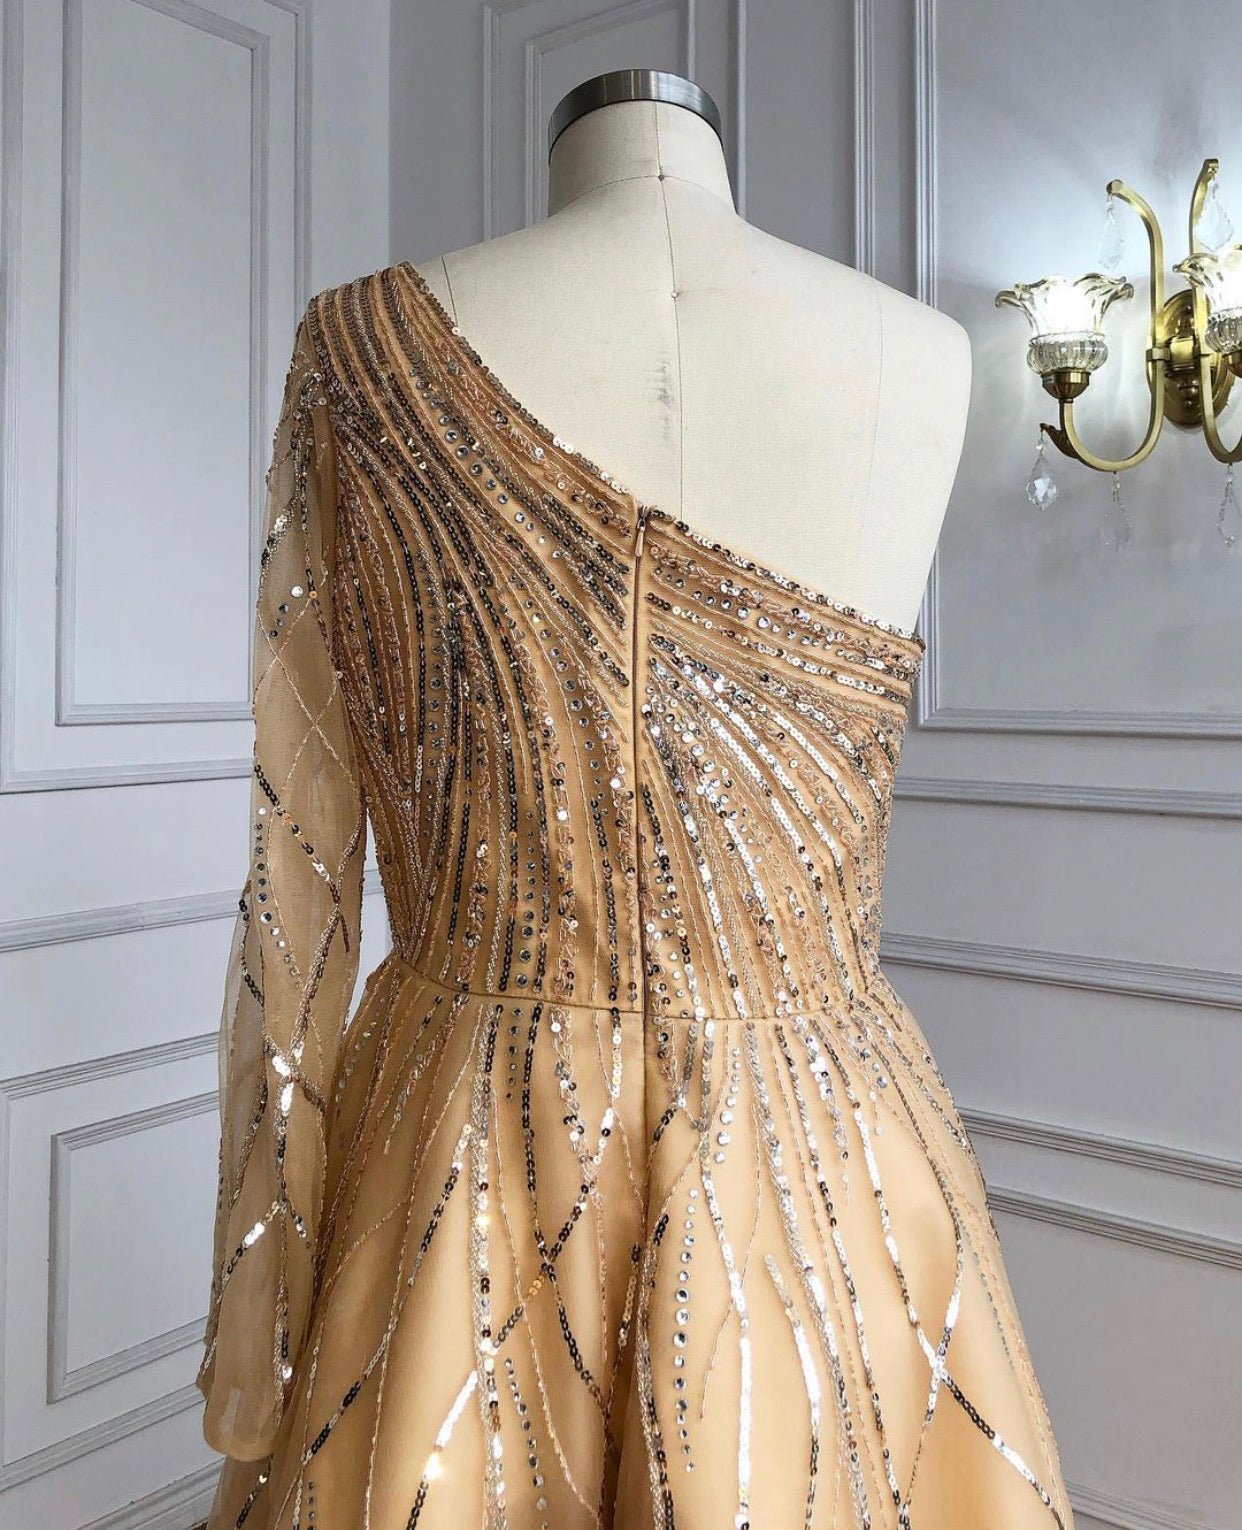 Paislee Luxury Long Sleeves Beading Evening Dress - Mscooco.co.uk